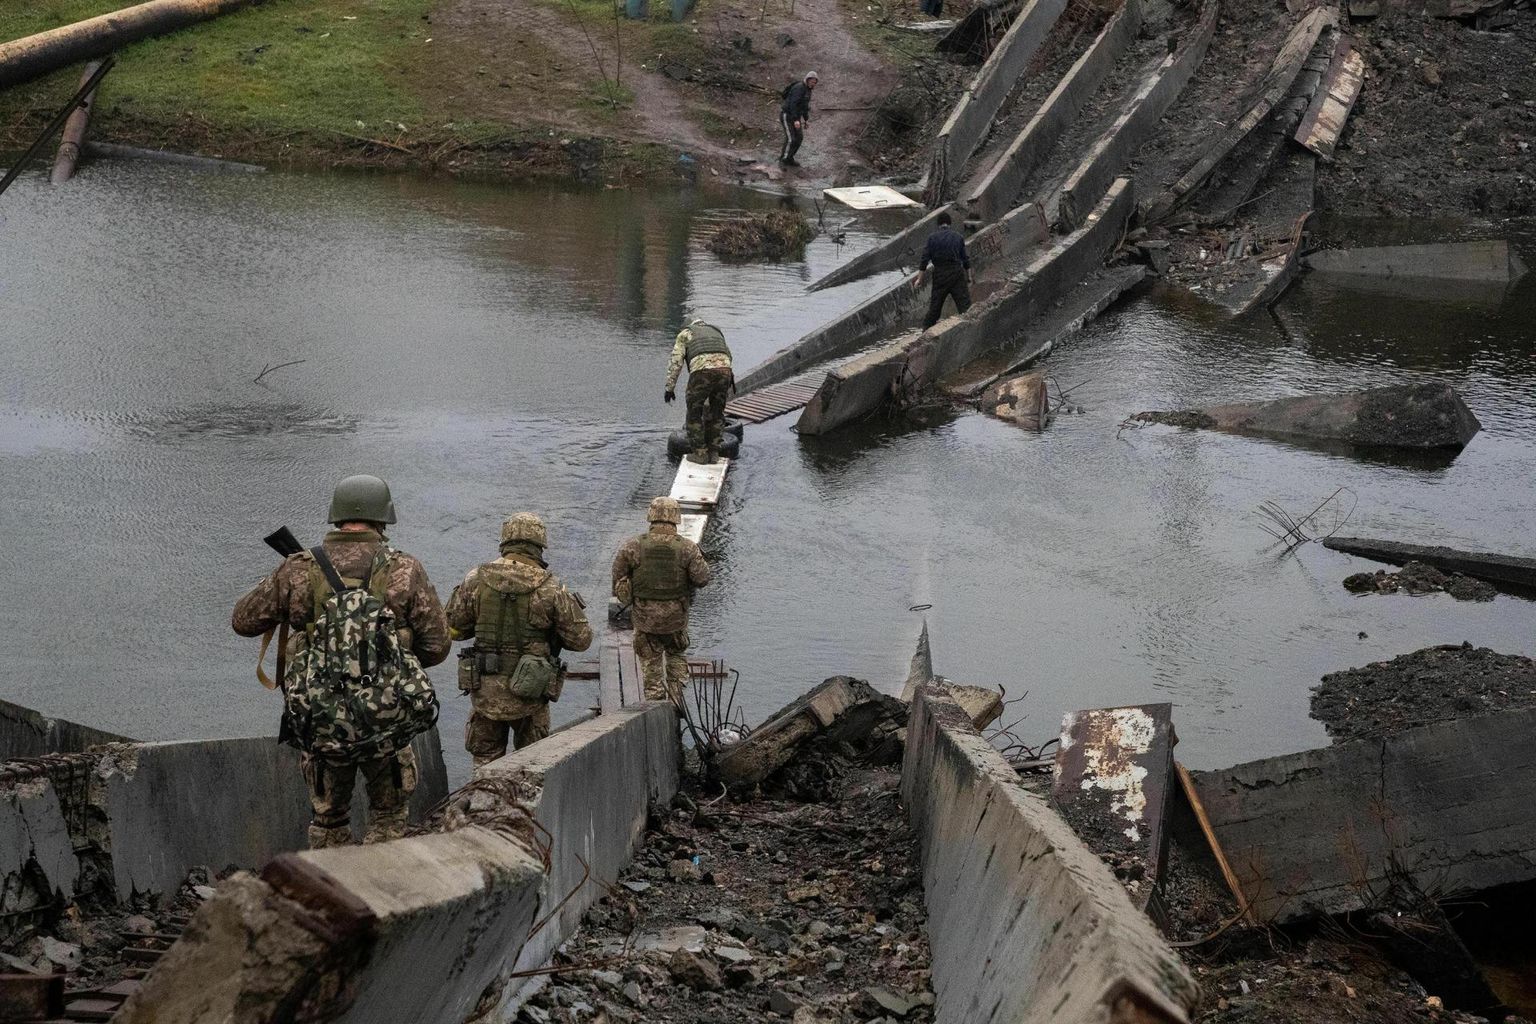 Purustatud sild Bahmutis. Elanikud ja sõdurid silda ületamas. 